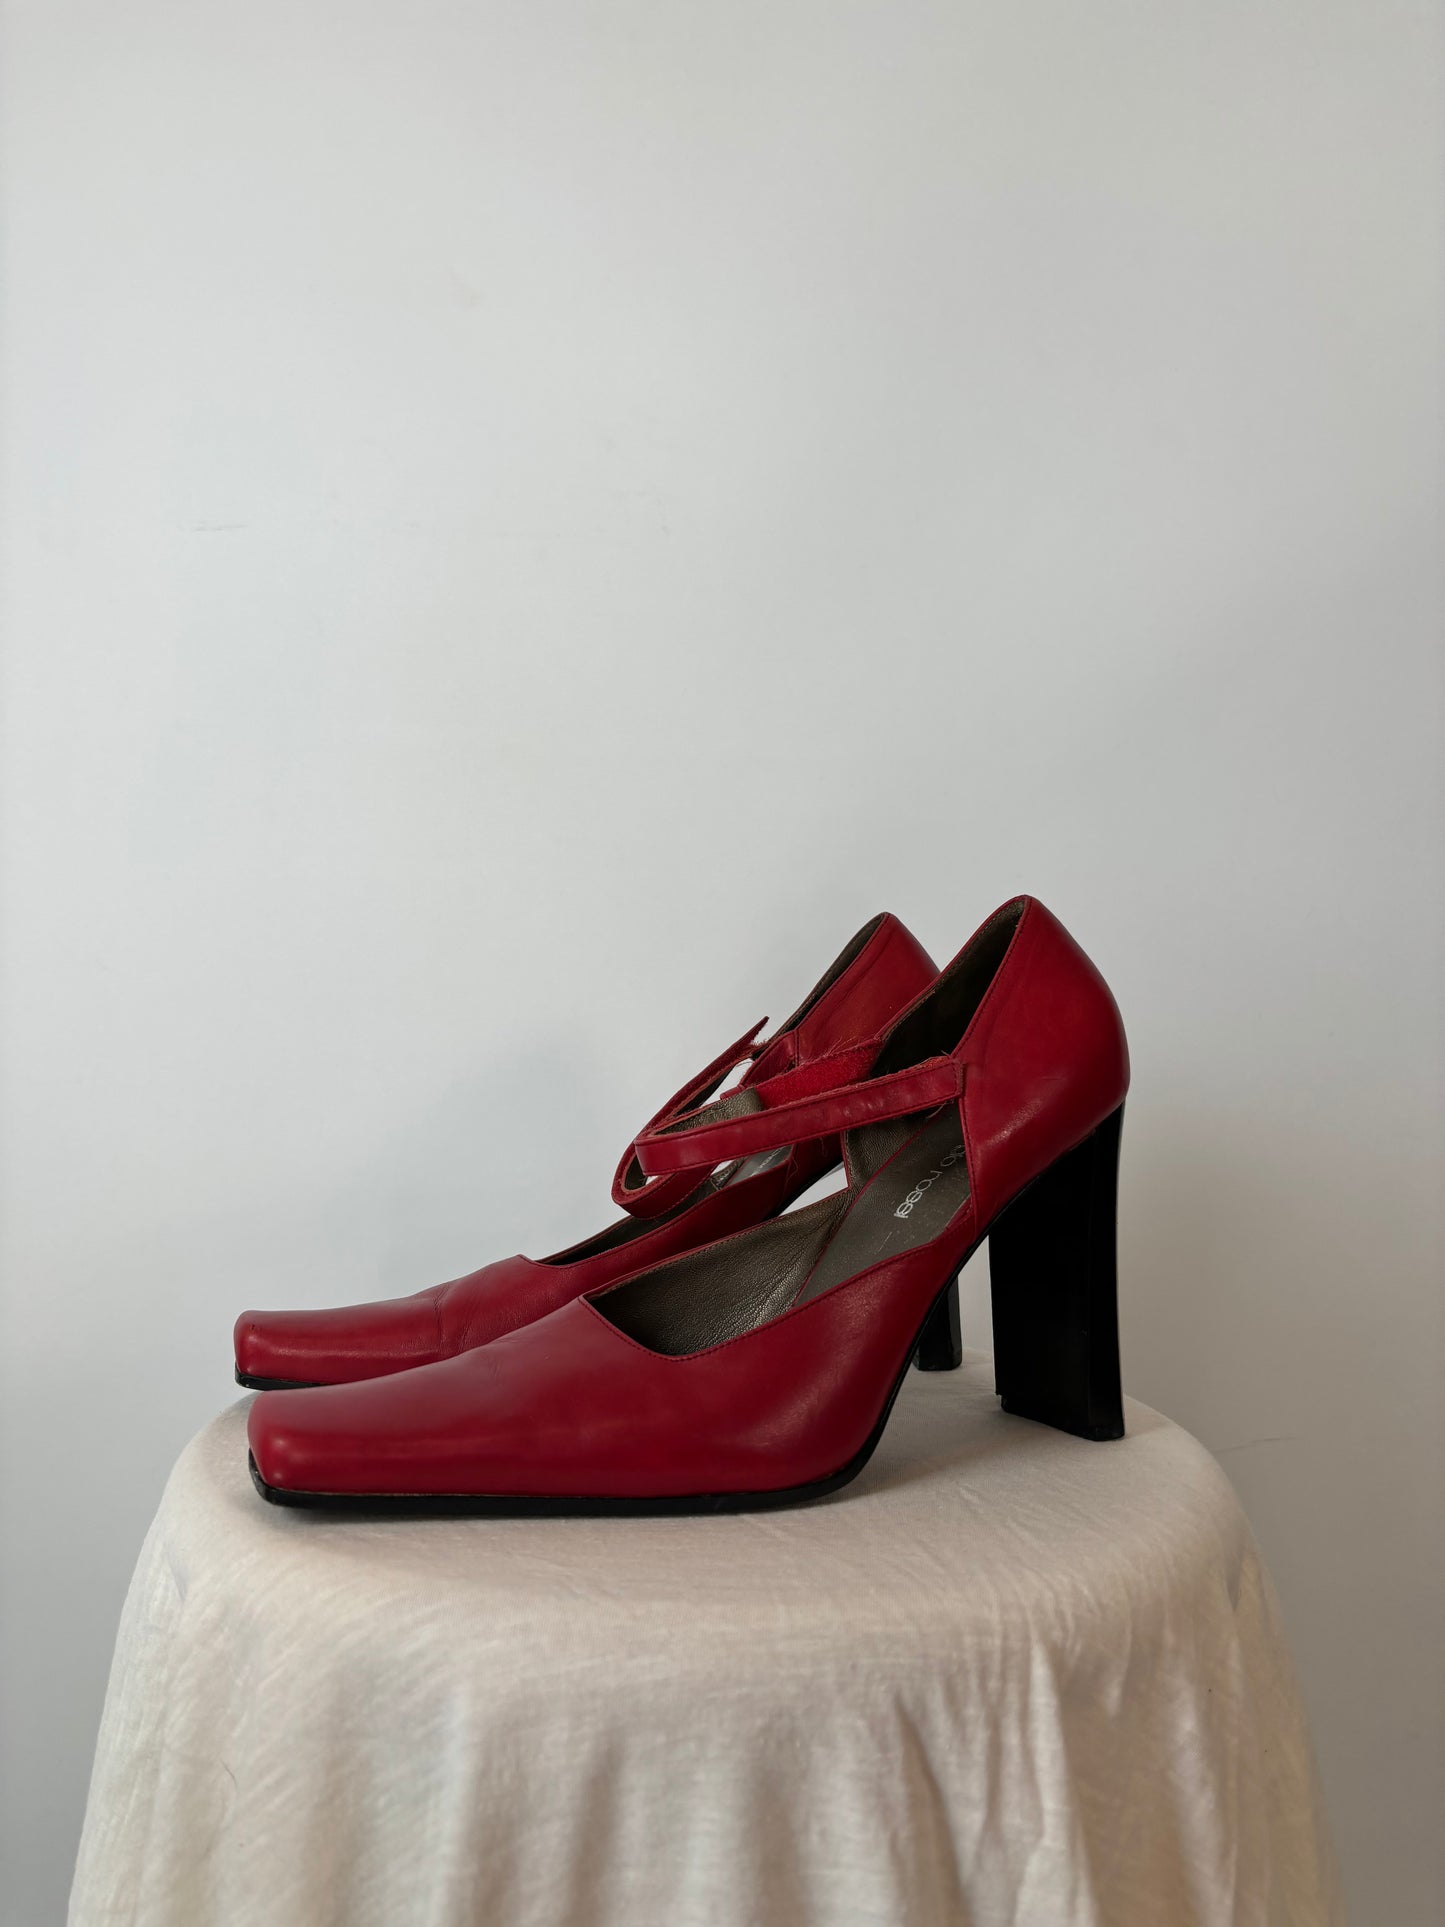 Vintage Red Sergio Rossi Heels